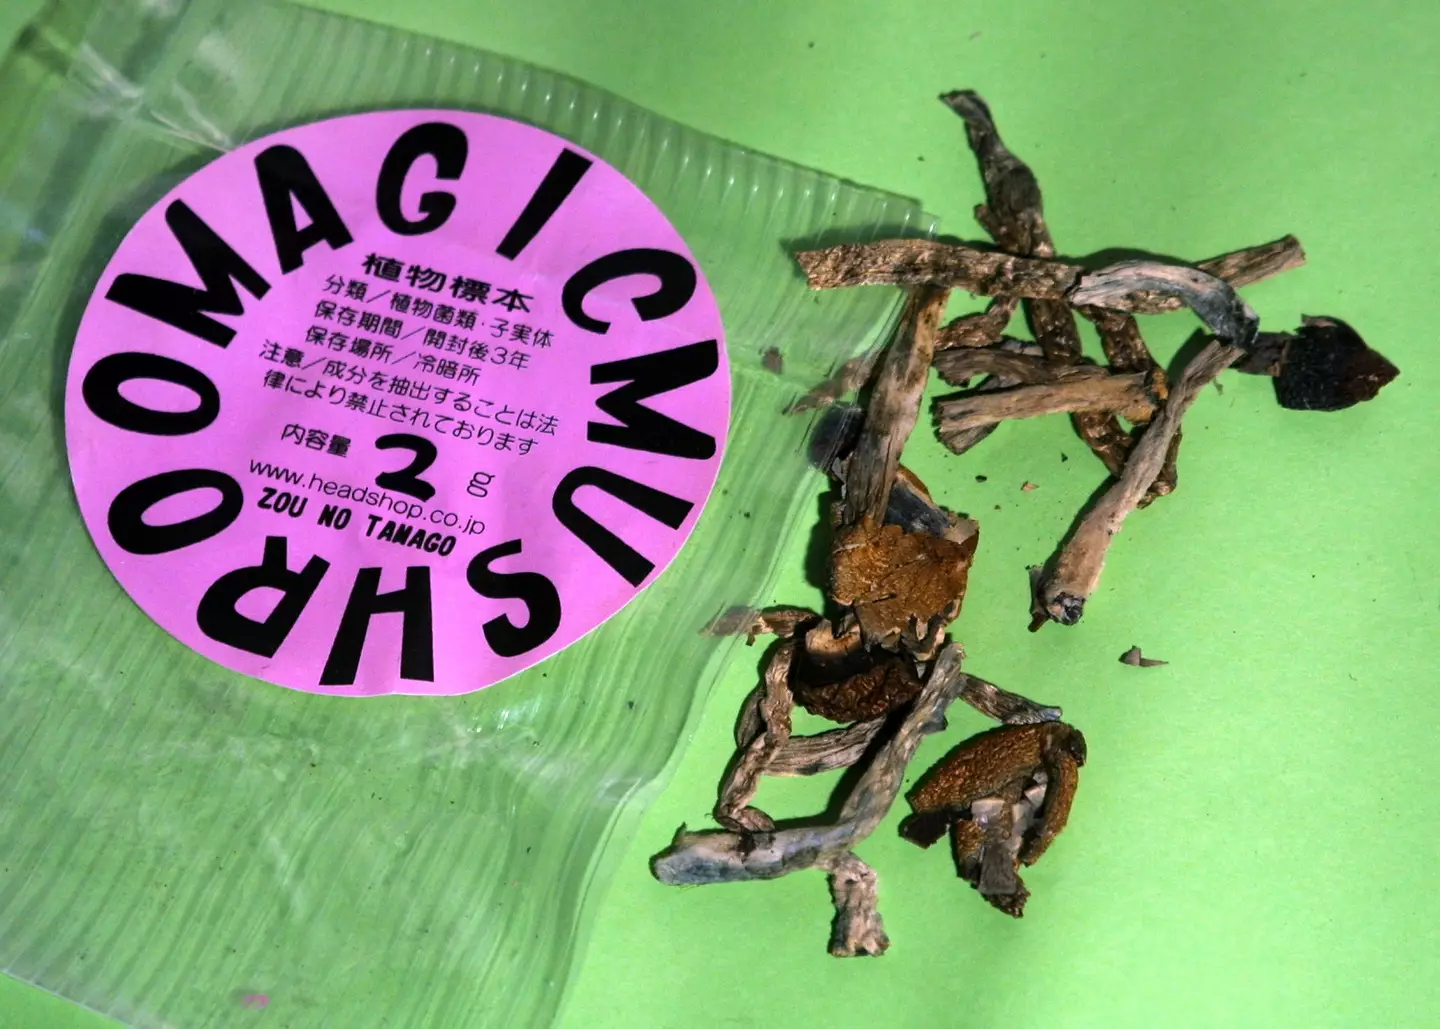 Magic mushrooms can cause hallucinations.